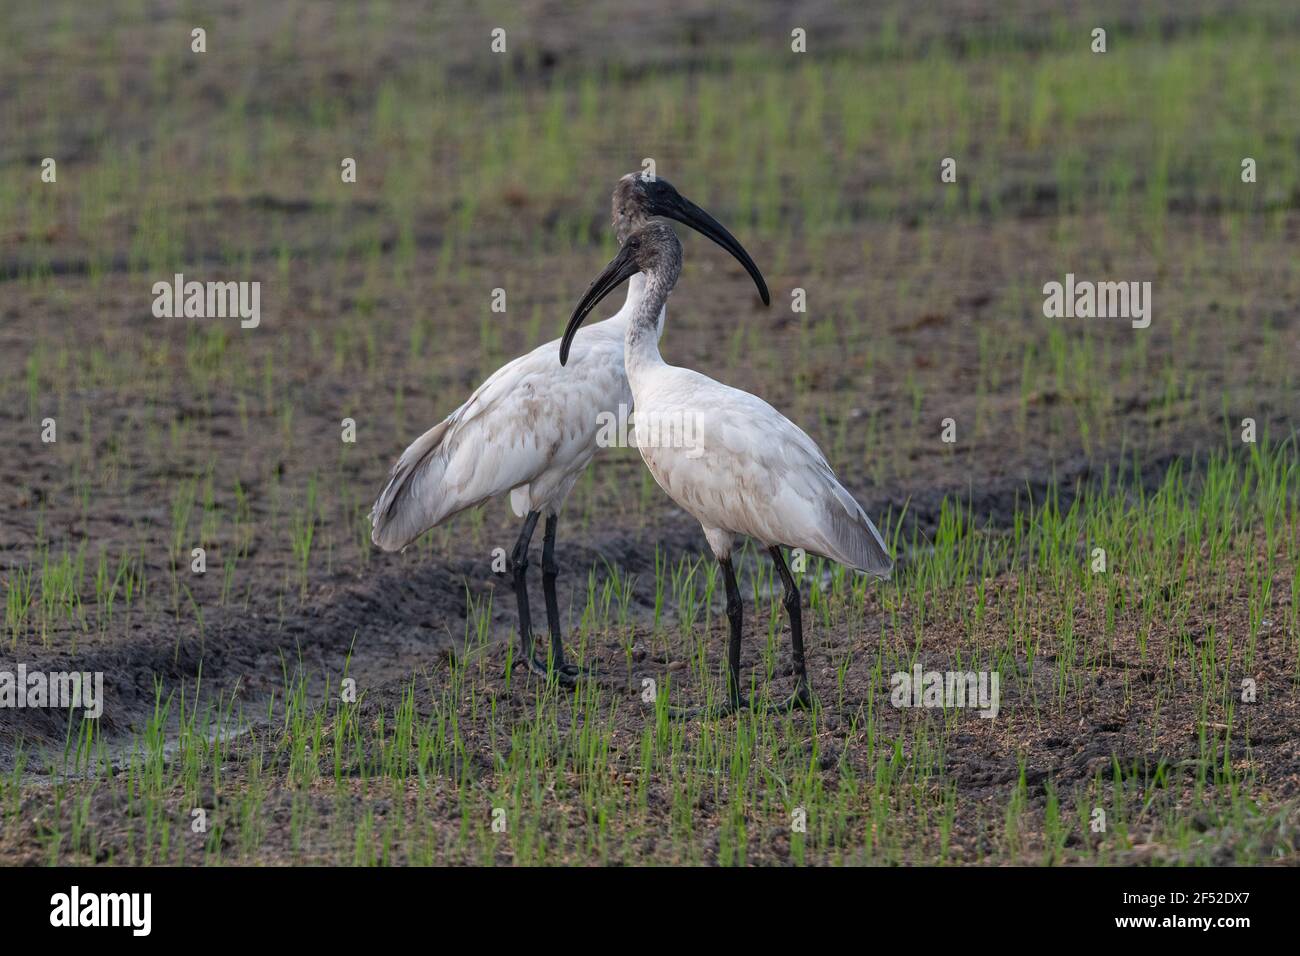 L'ibis a testa nera (Threskiornis melanocephalus), conosciuto anche come ibis bianco orientale, ibis bianco indiano e ibis a collo nero. Foto Stock